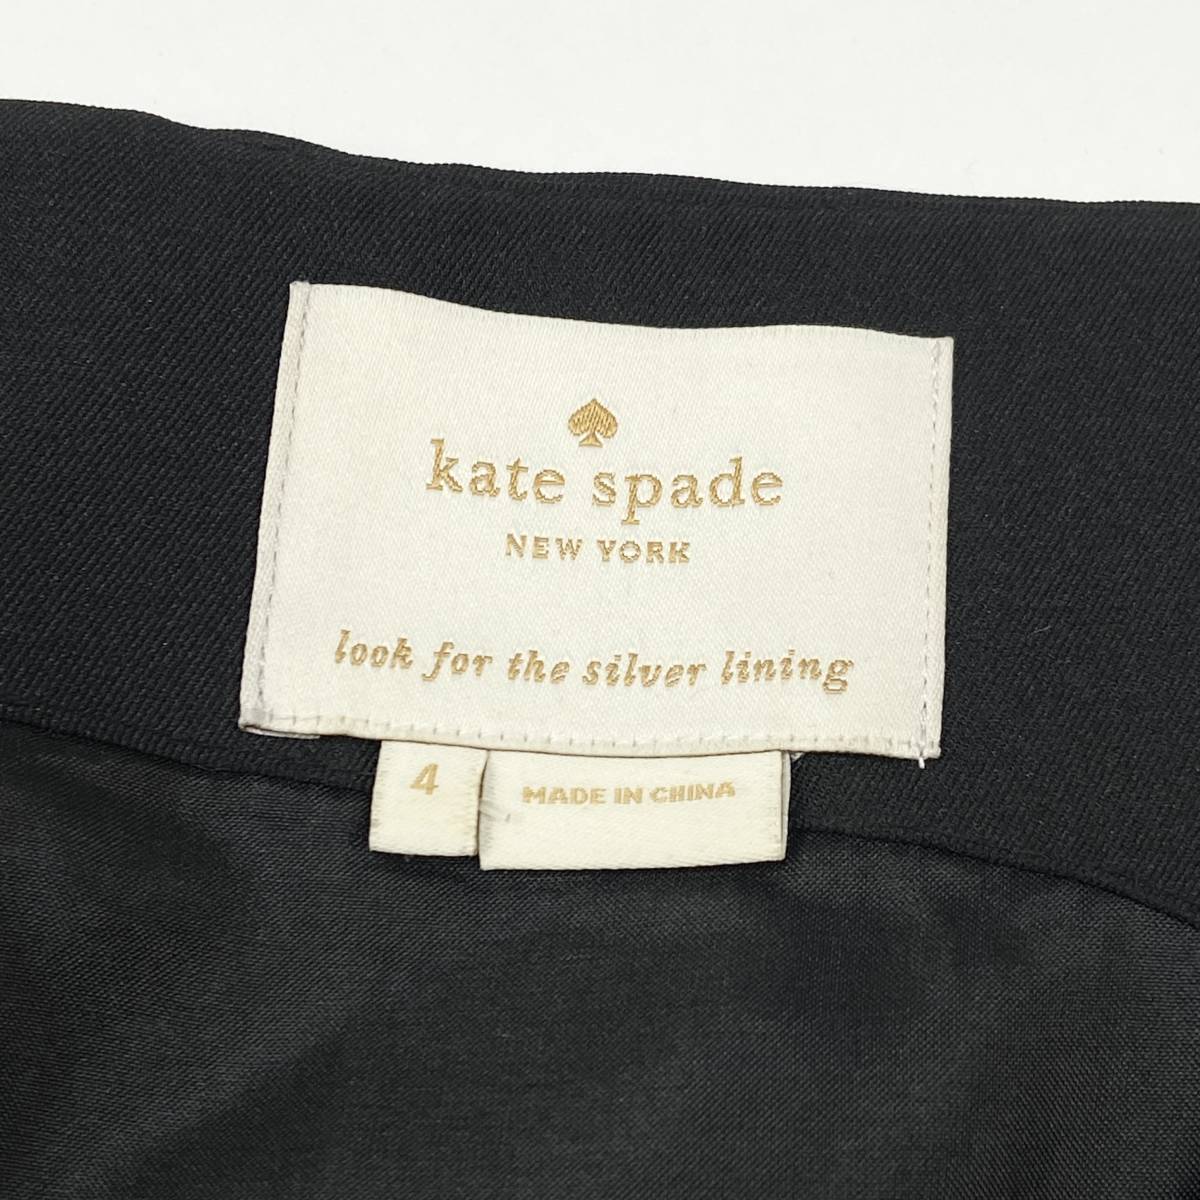 極美品 kate spade ケイトスペード ビジュー&スパンコール装飾 ノースリーブVネックワンピース NJMU5101 サイズ4 SSL624 ブラック ドレス